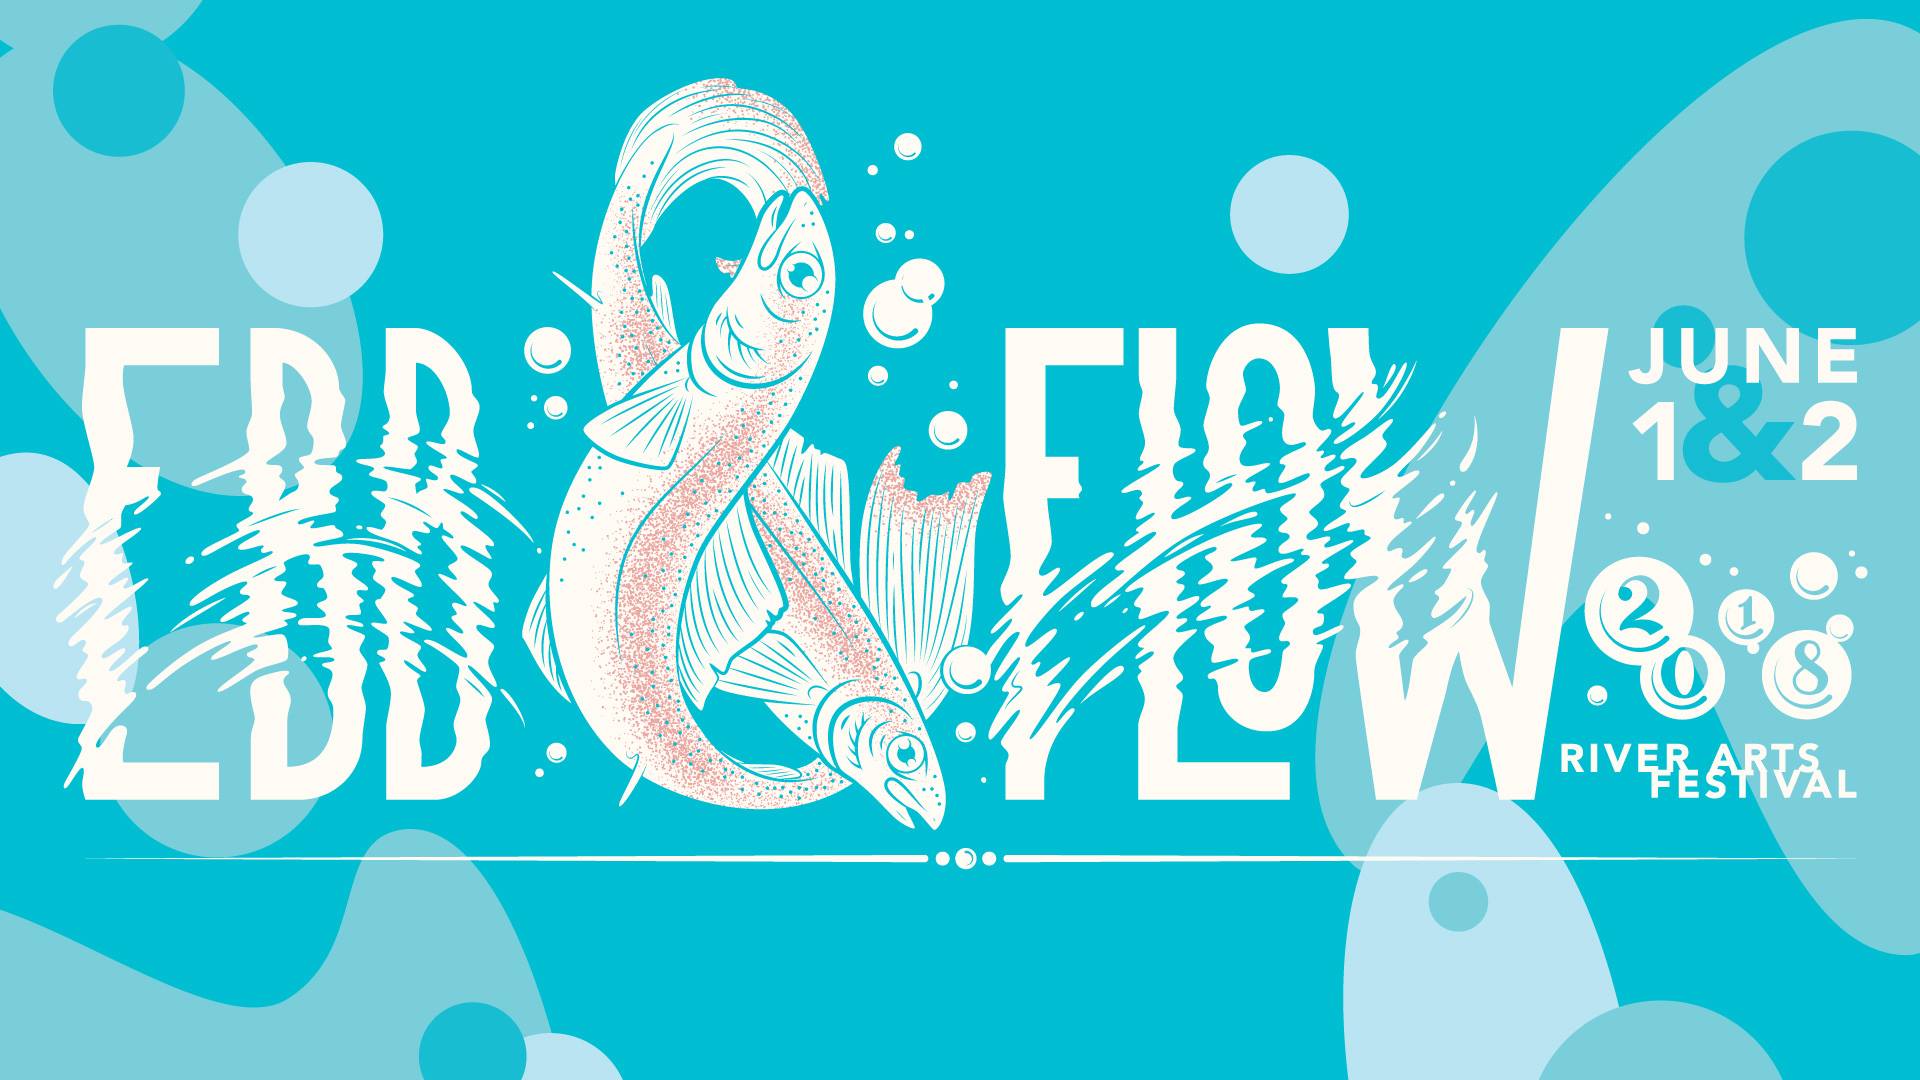 Ebb & Flow Festival 2018